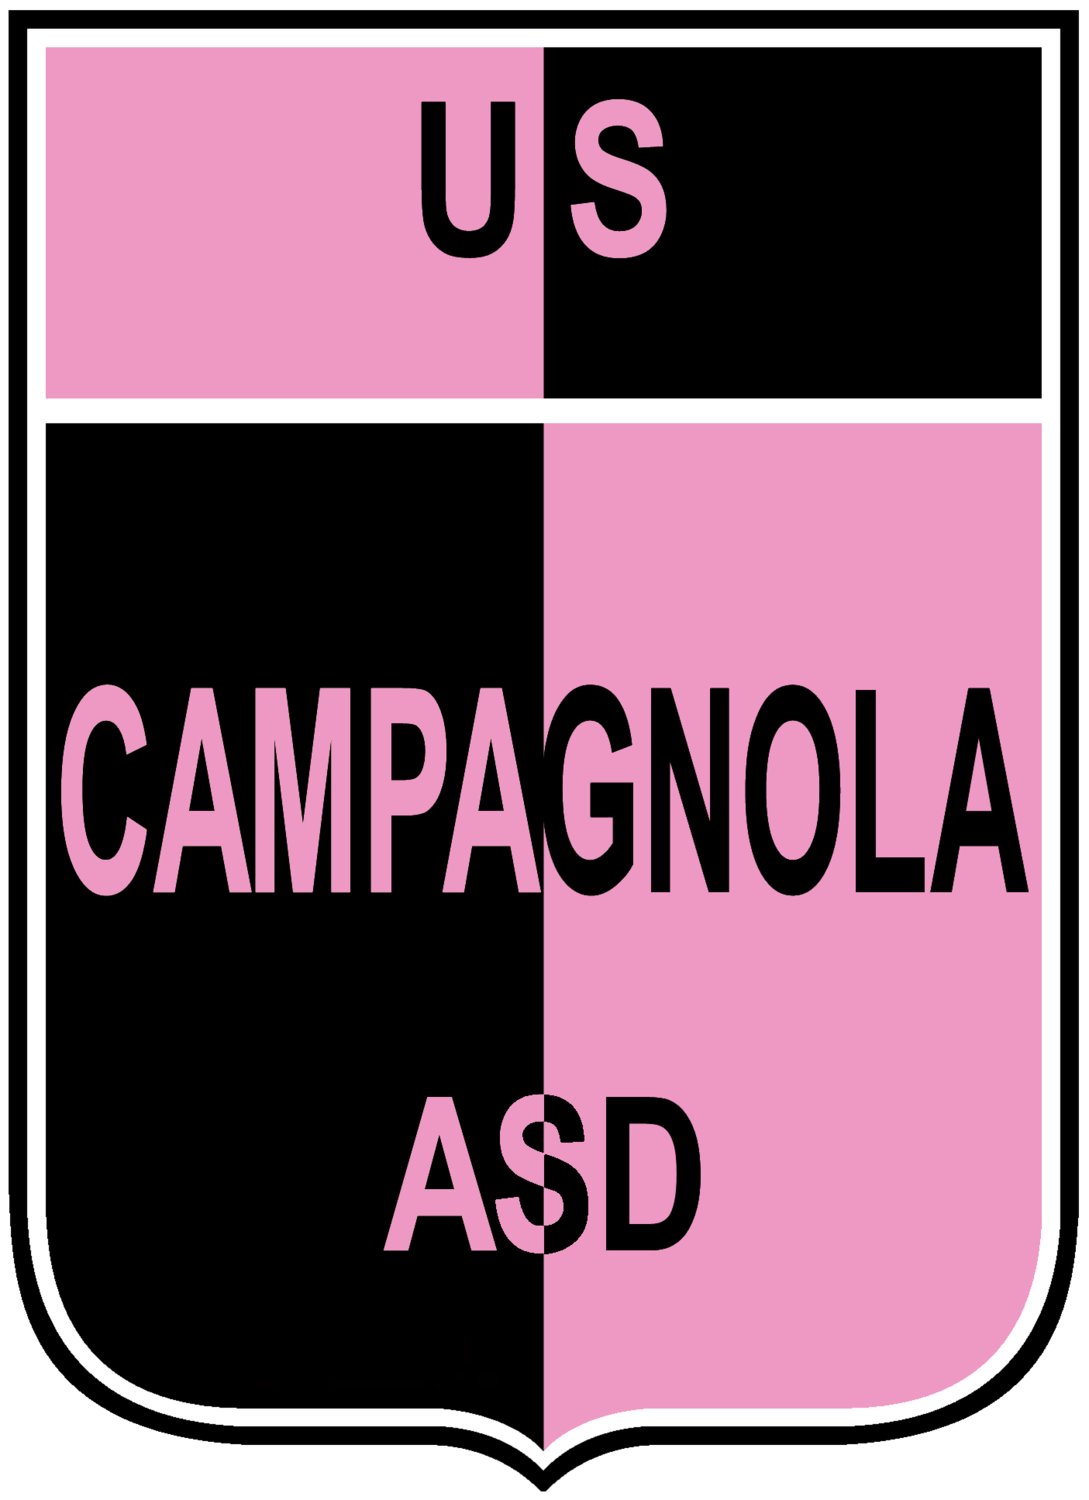 Wappen US Campagnola